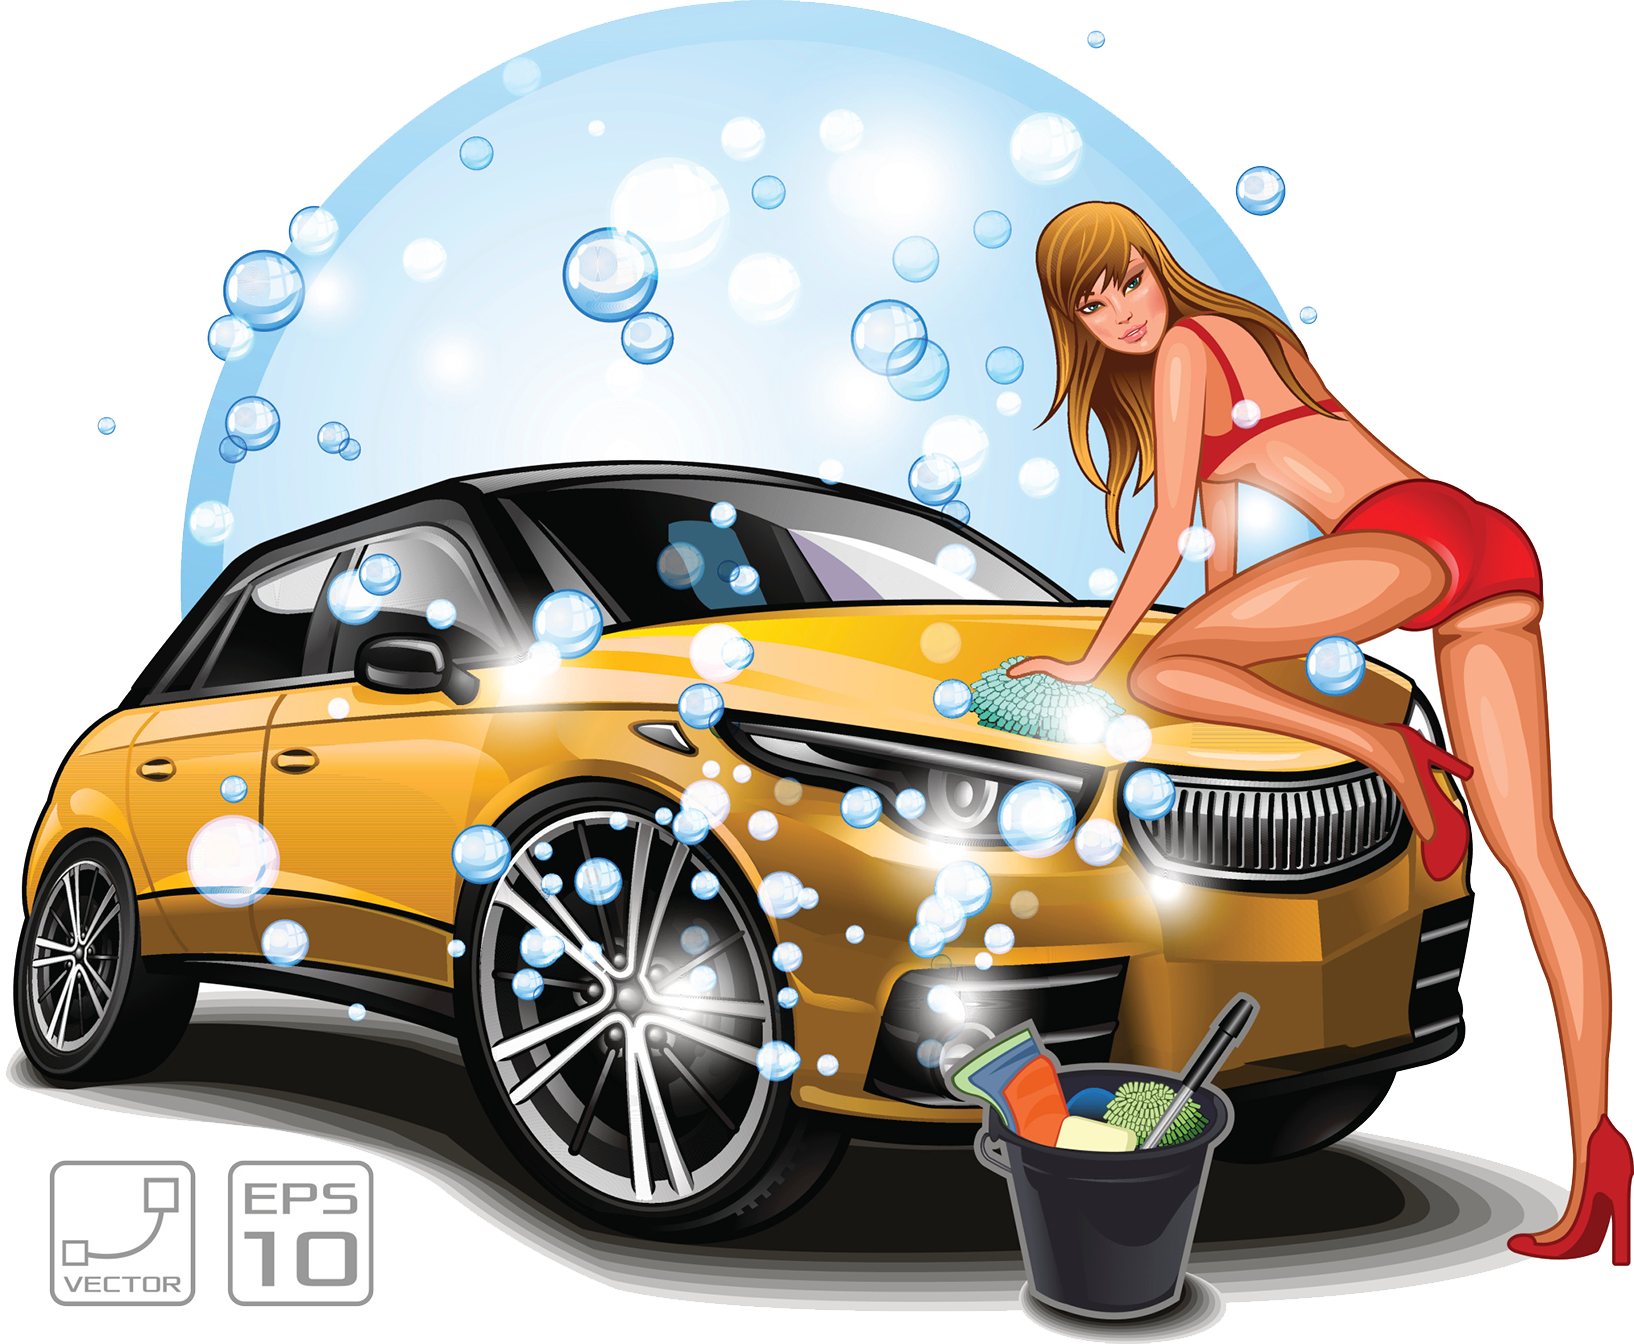 A Woman In A Garment Washing A Car